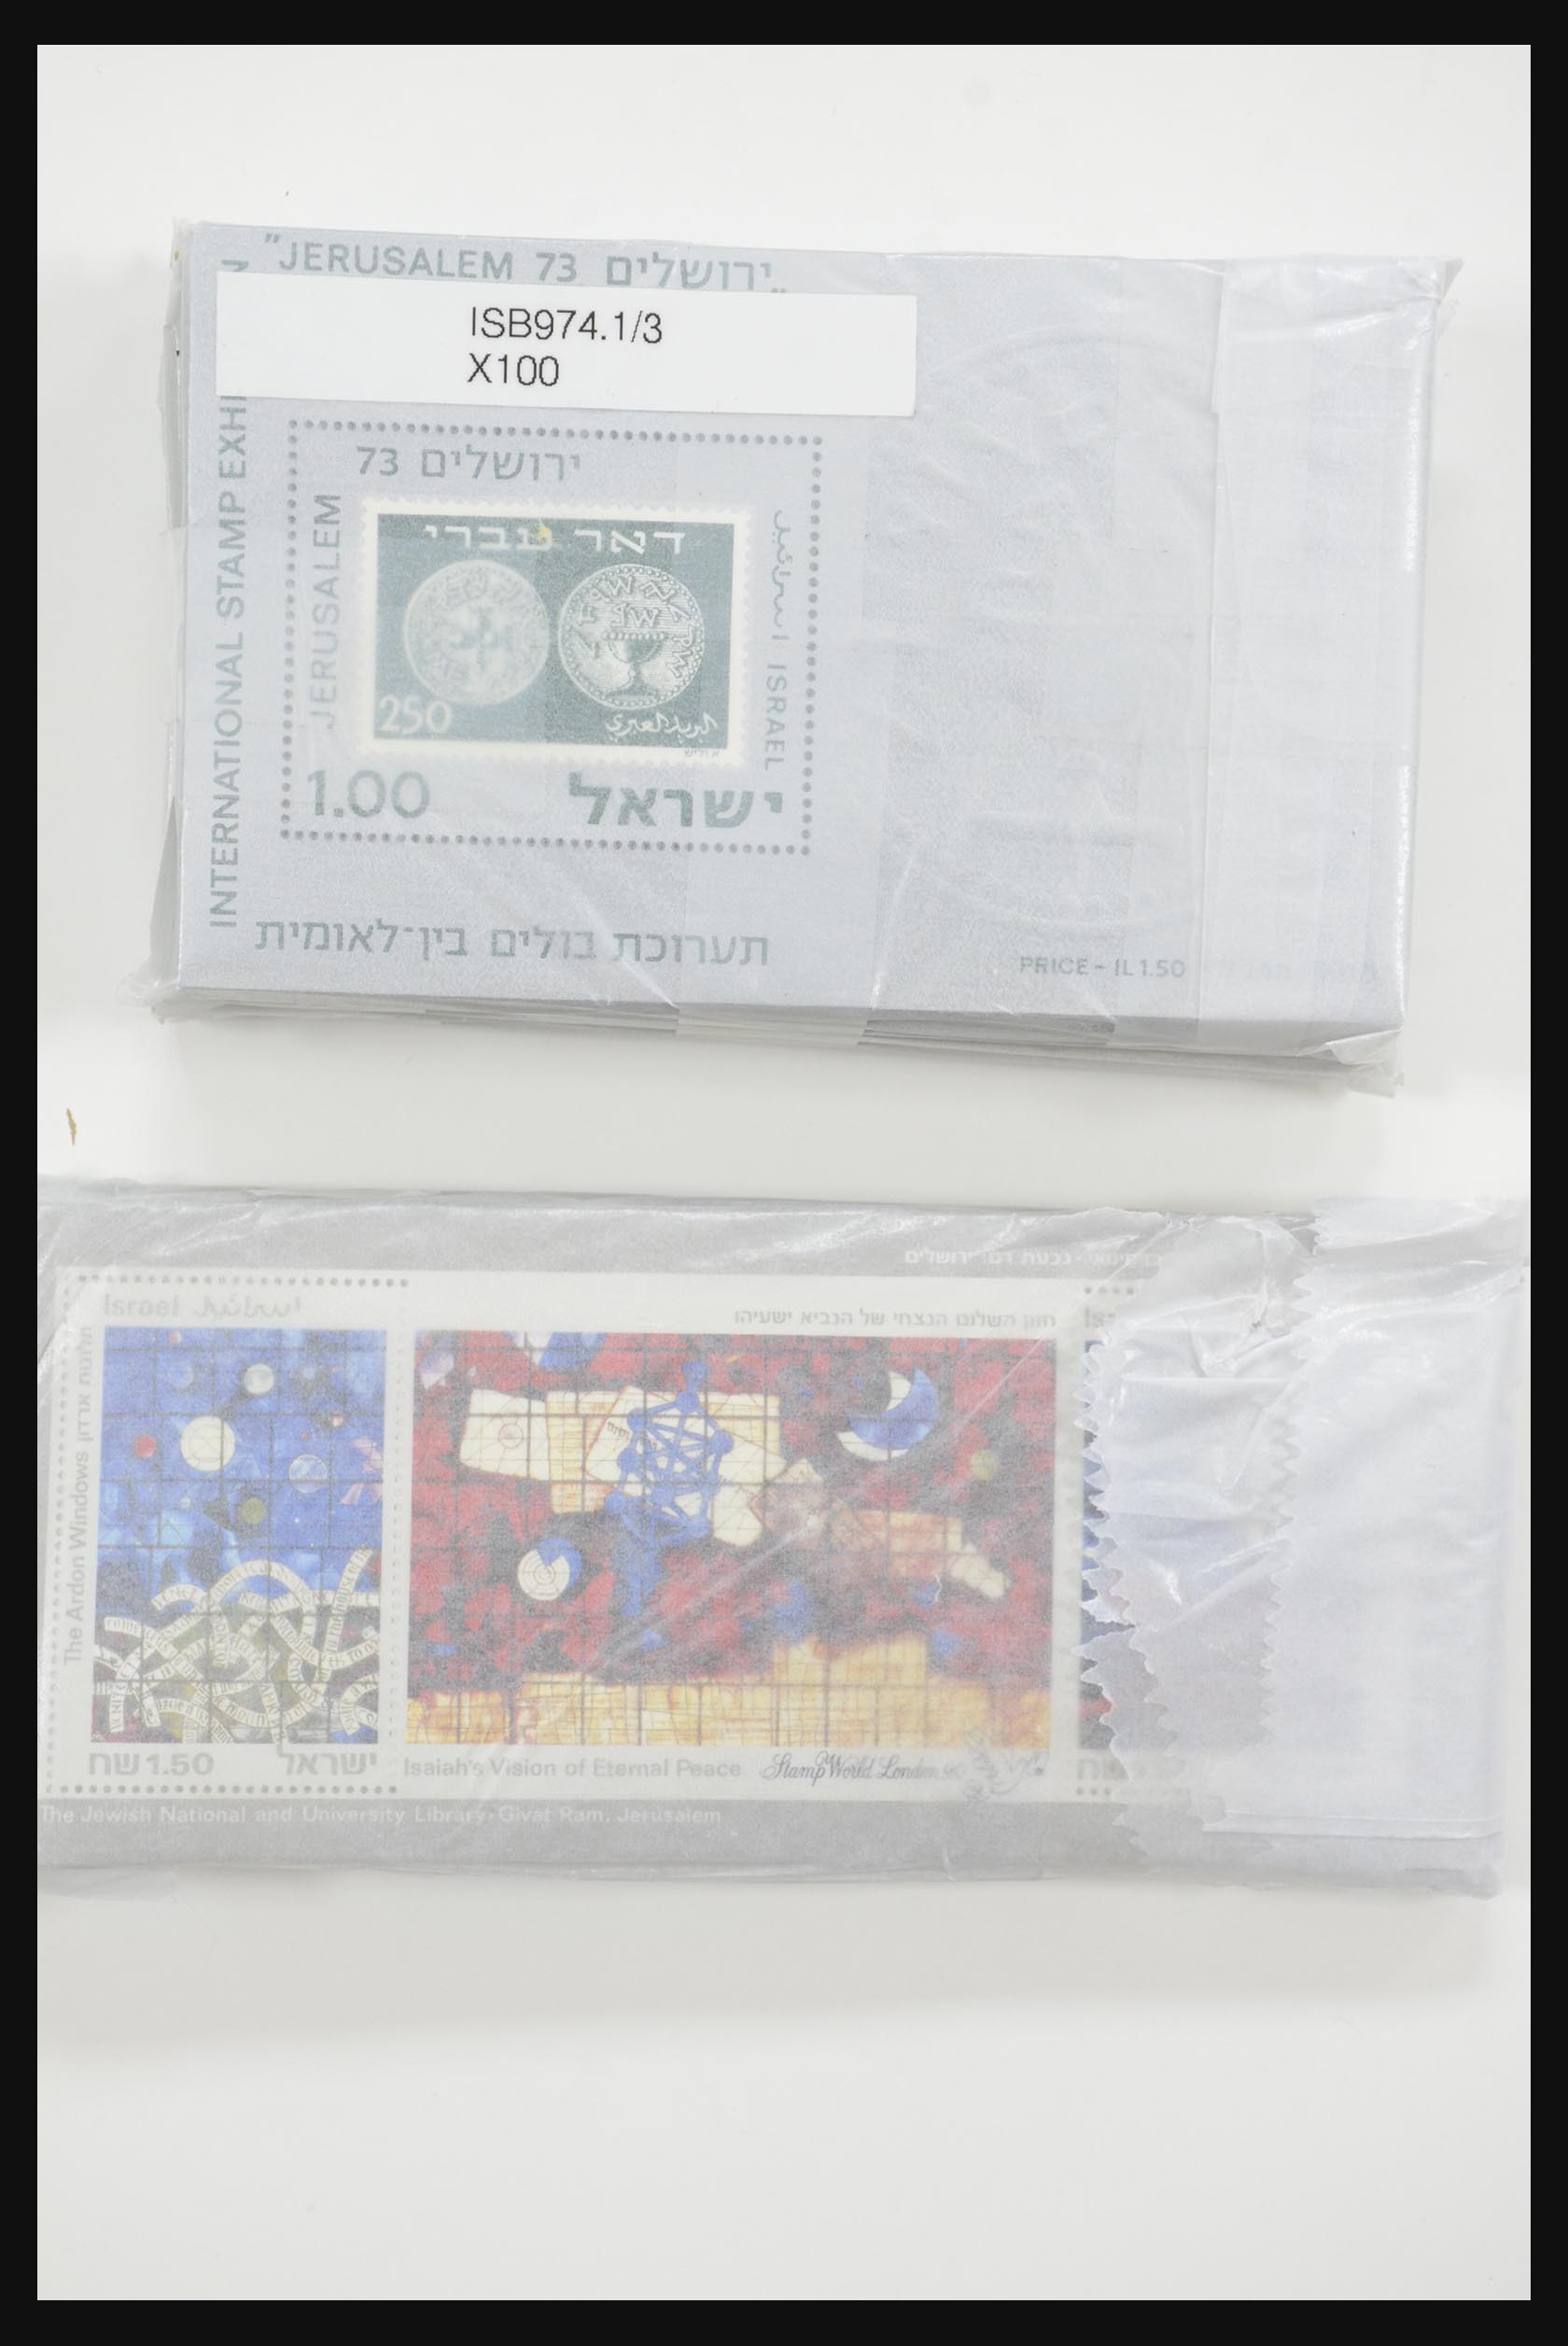 31891 012 - 31891 Israel souvenir sheets 1949-1992.